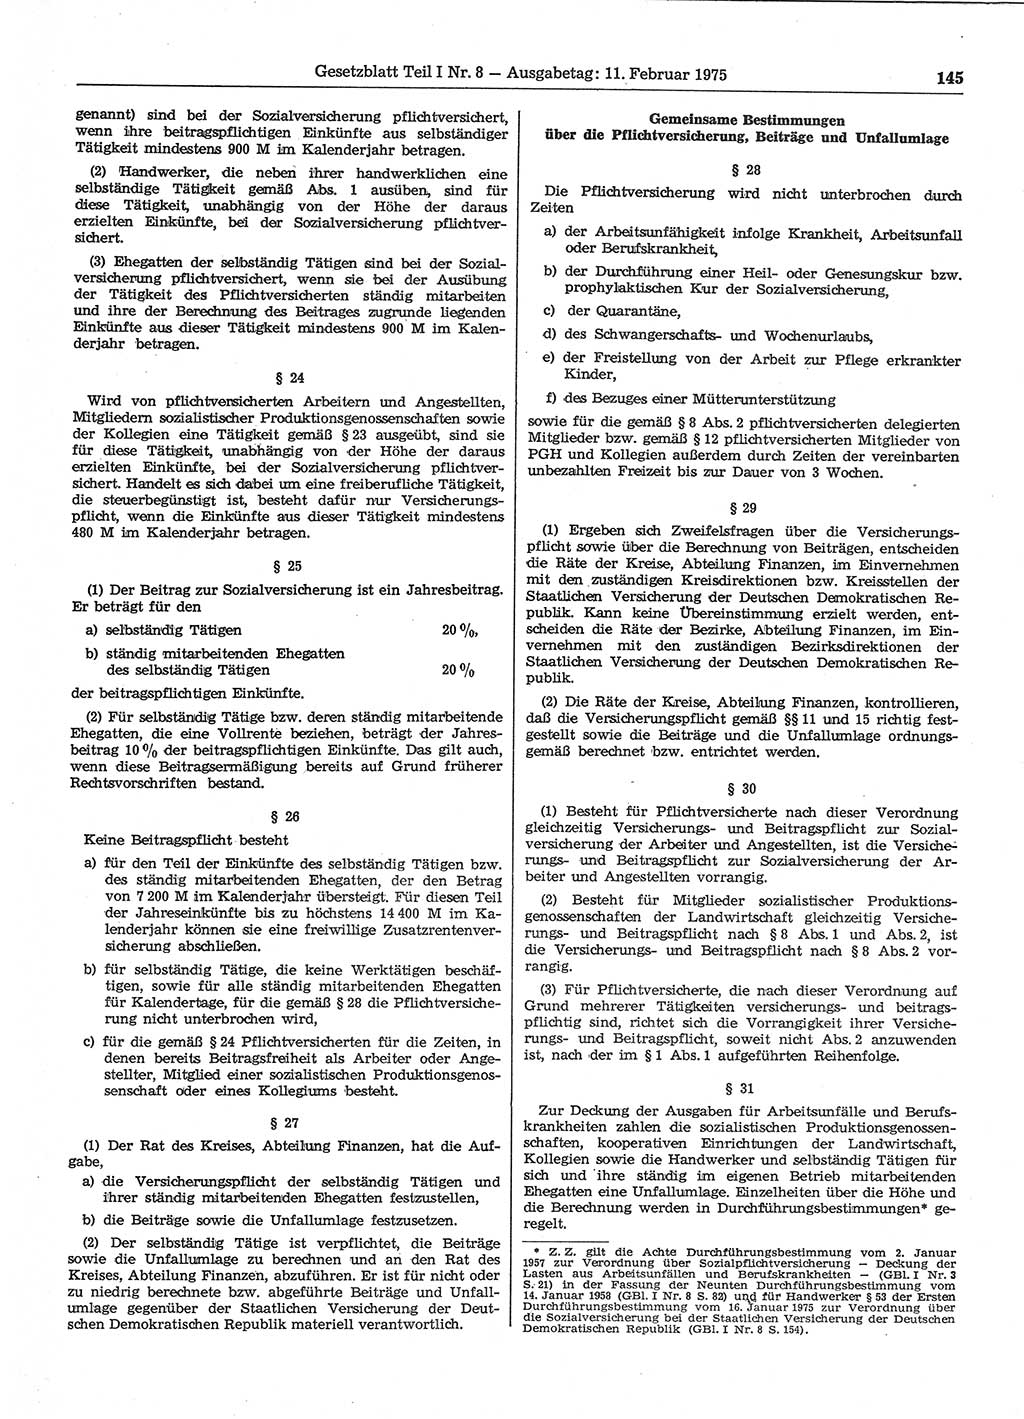 Gesetzblatt (GBl.) der Deutschen Demokratischen Republik (DDR) Teil Ⅰ 1975, Seite 145 (GBl. DDR Ⅰ 1975, S. 145)